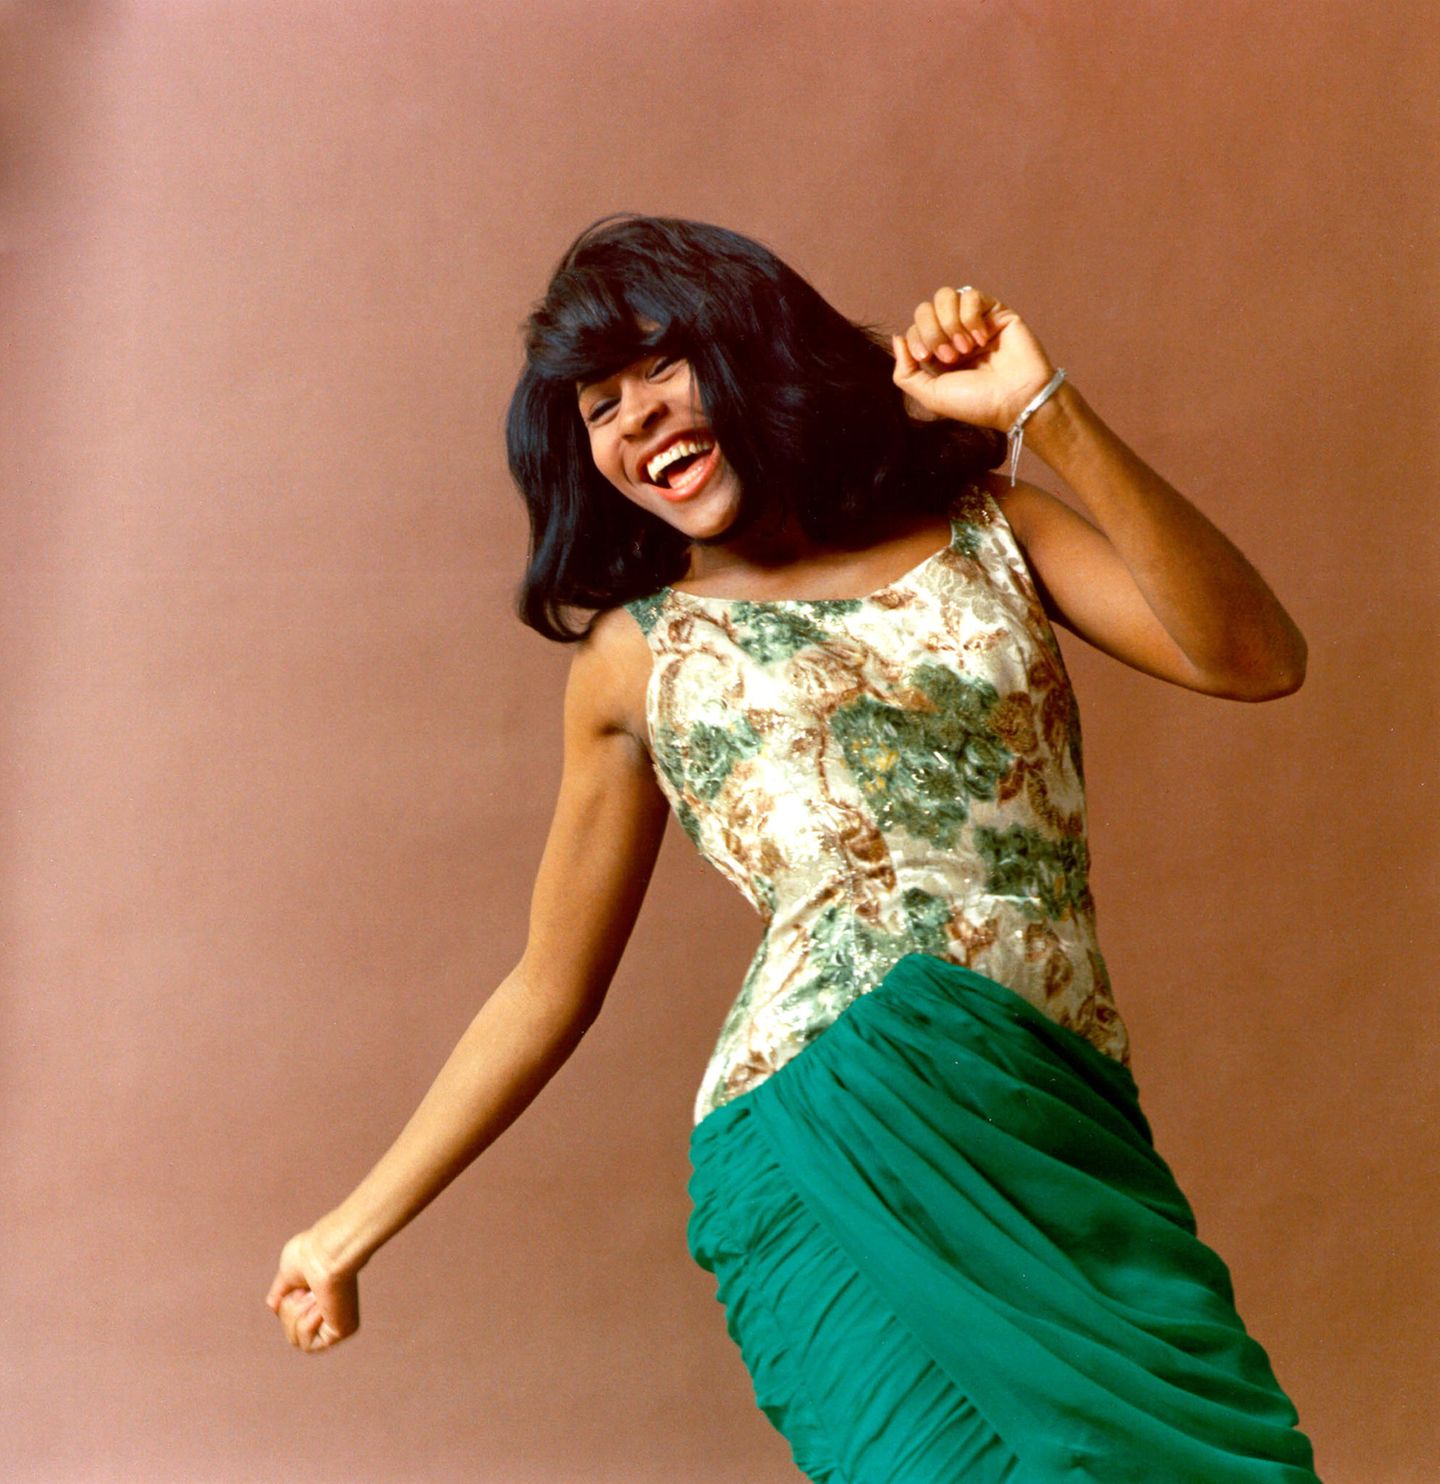 Eine der ersten Aufnahmen, die Tina Turner als Künstlerin vor der Kamera zeigen: 1964 tanzt die Sängerin in einem eleganten Kleid voller Energie für ein Shooting. 